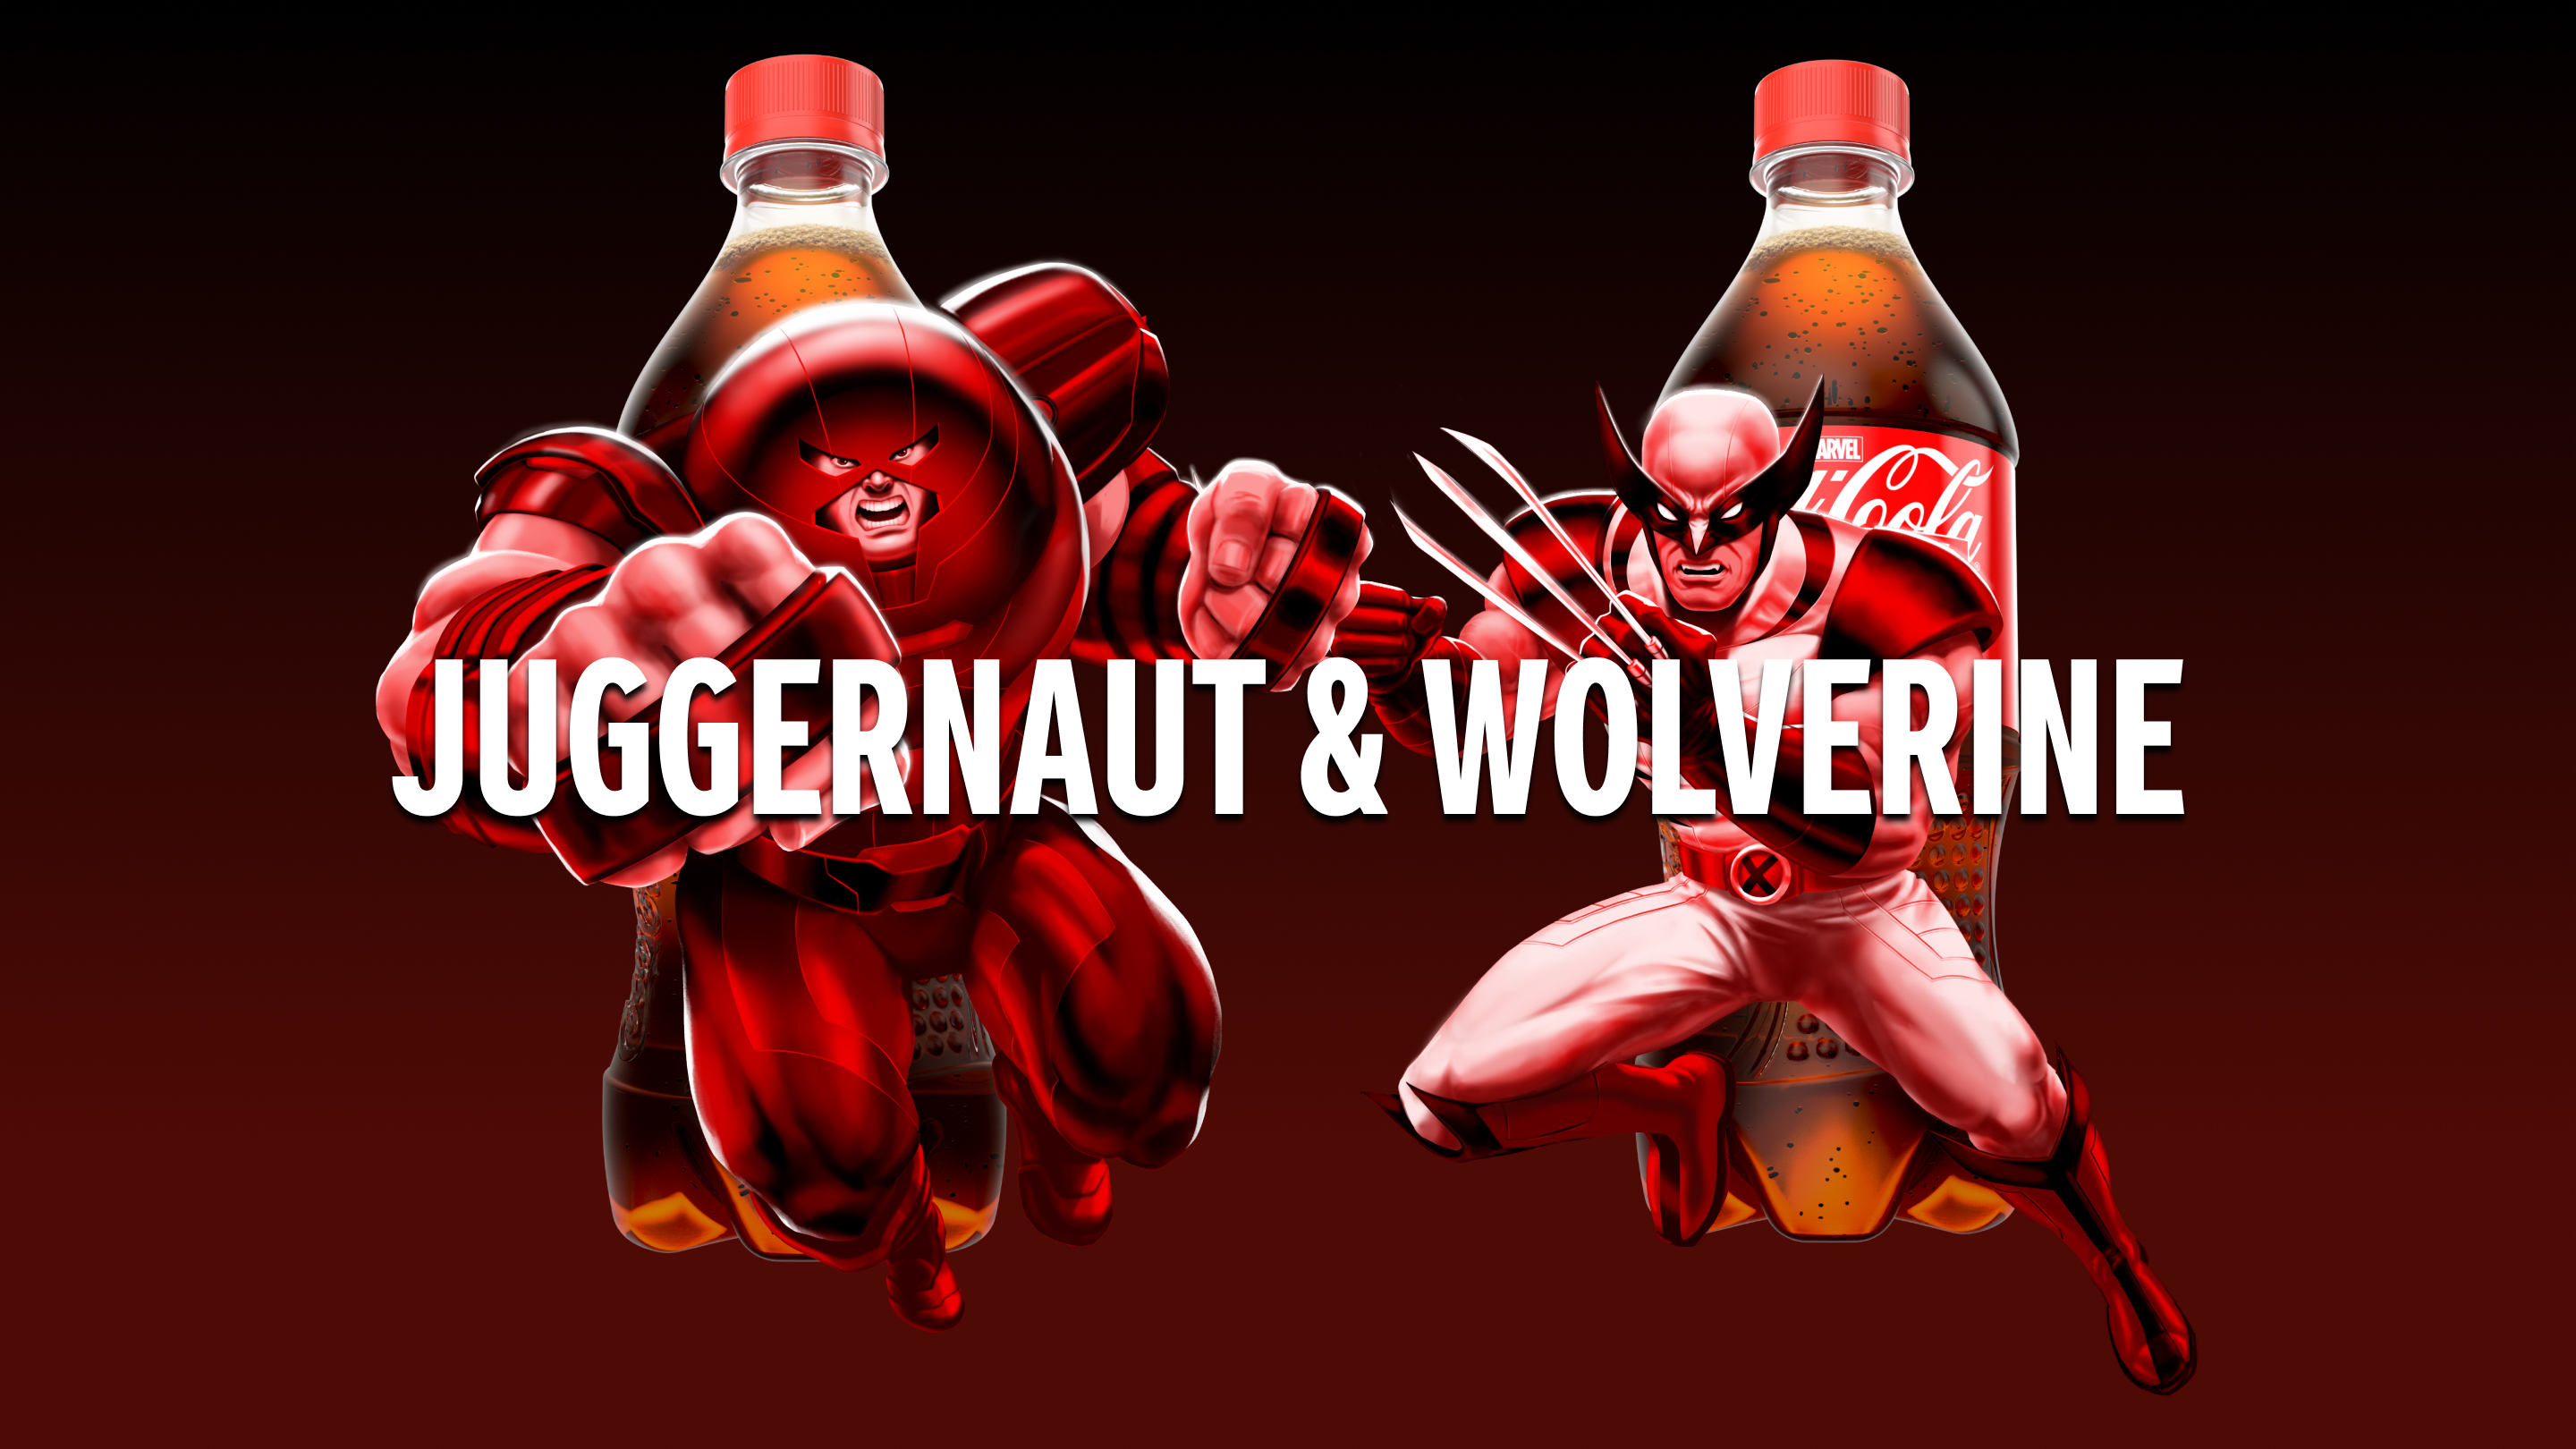 Juggernaut & Wolverine